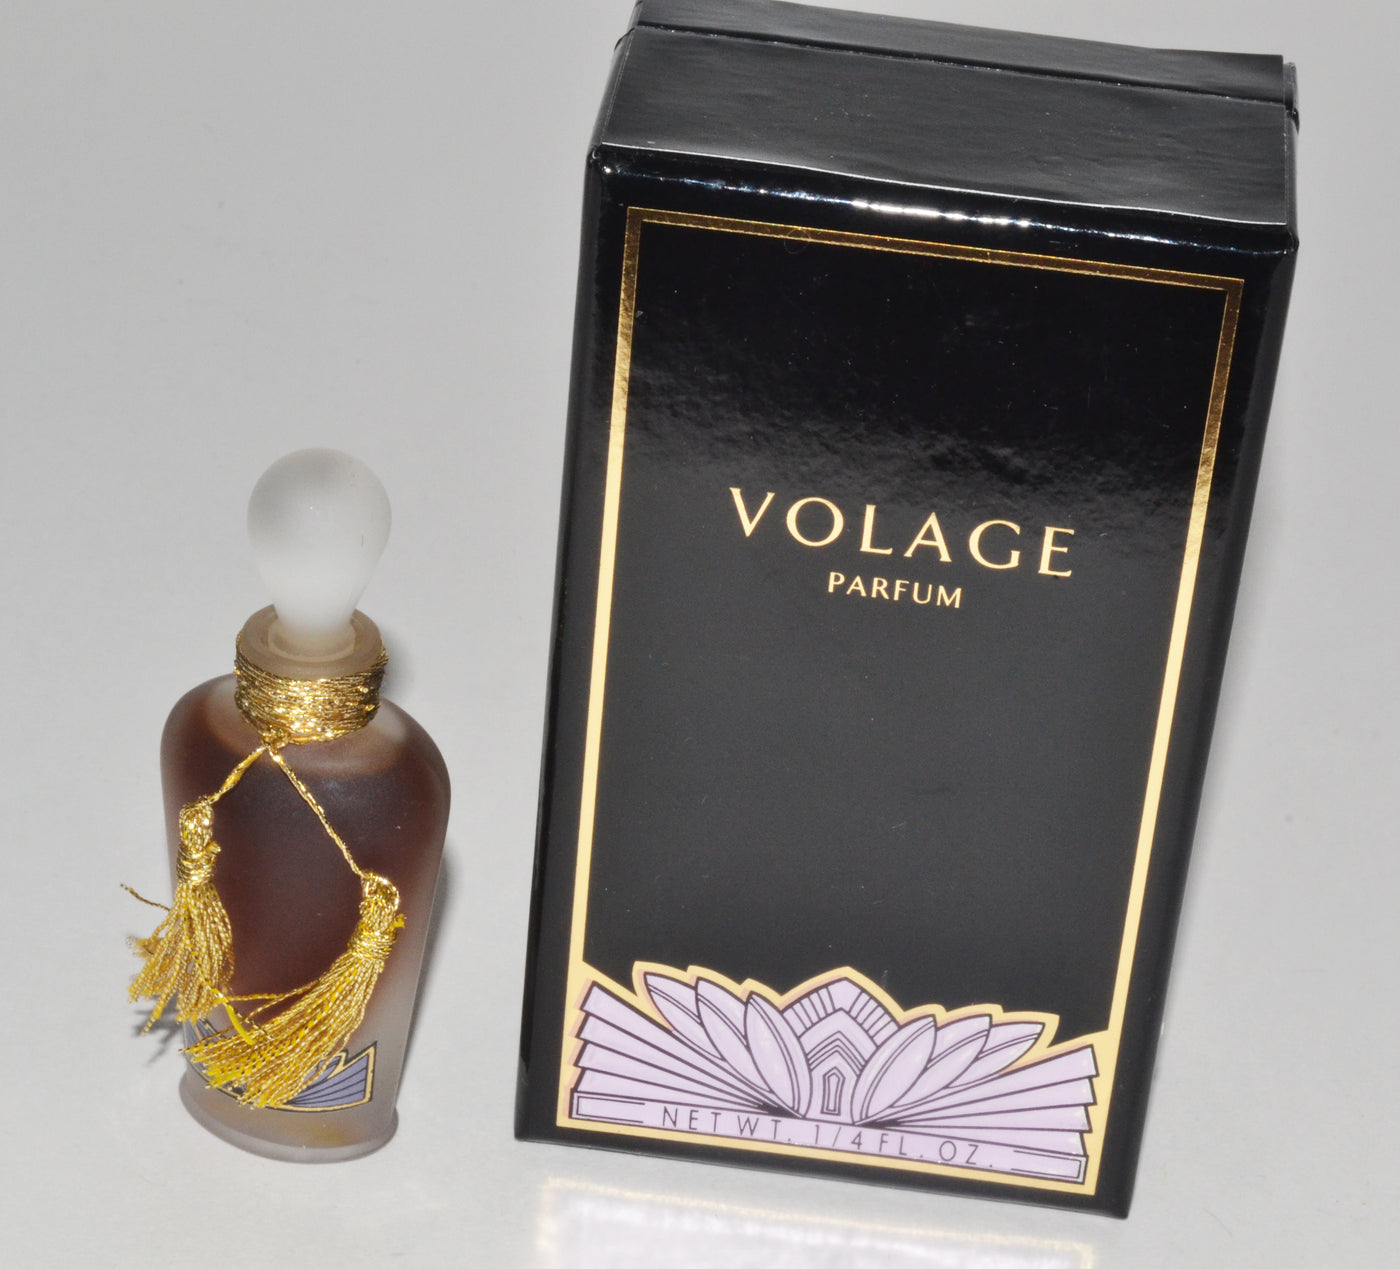 Volage Parfum By Neiman Marcus